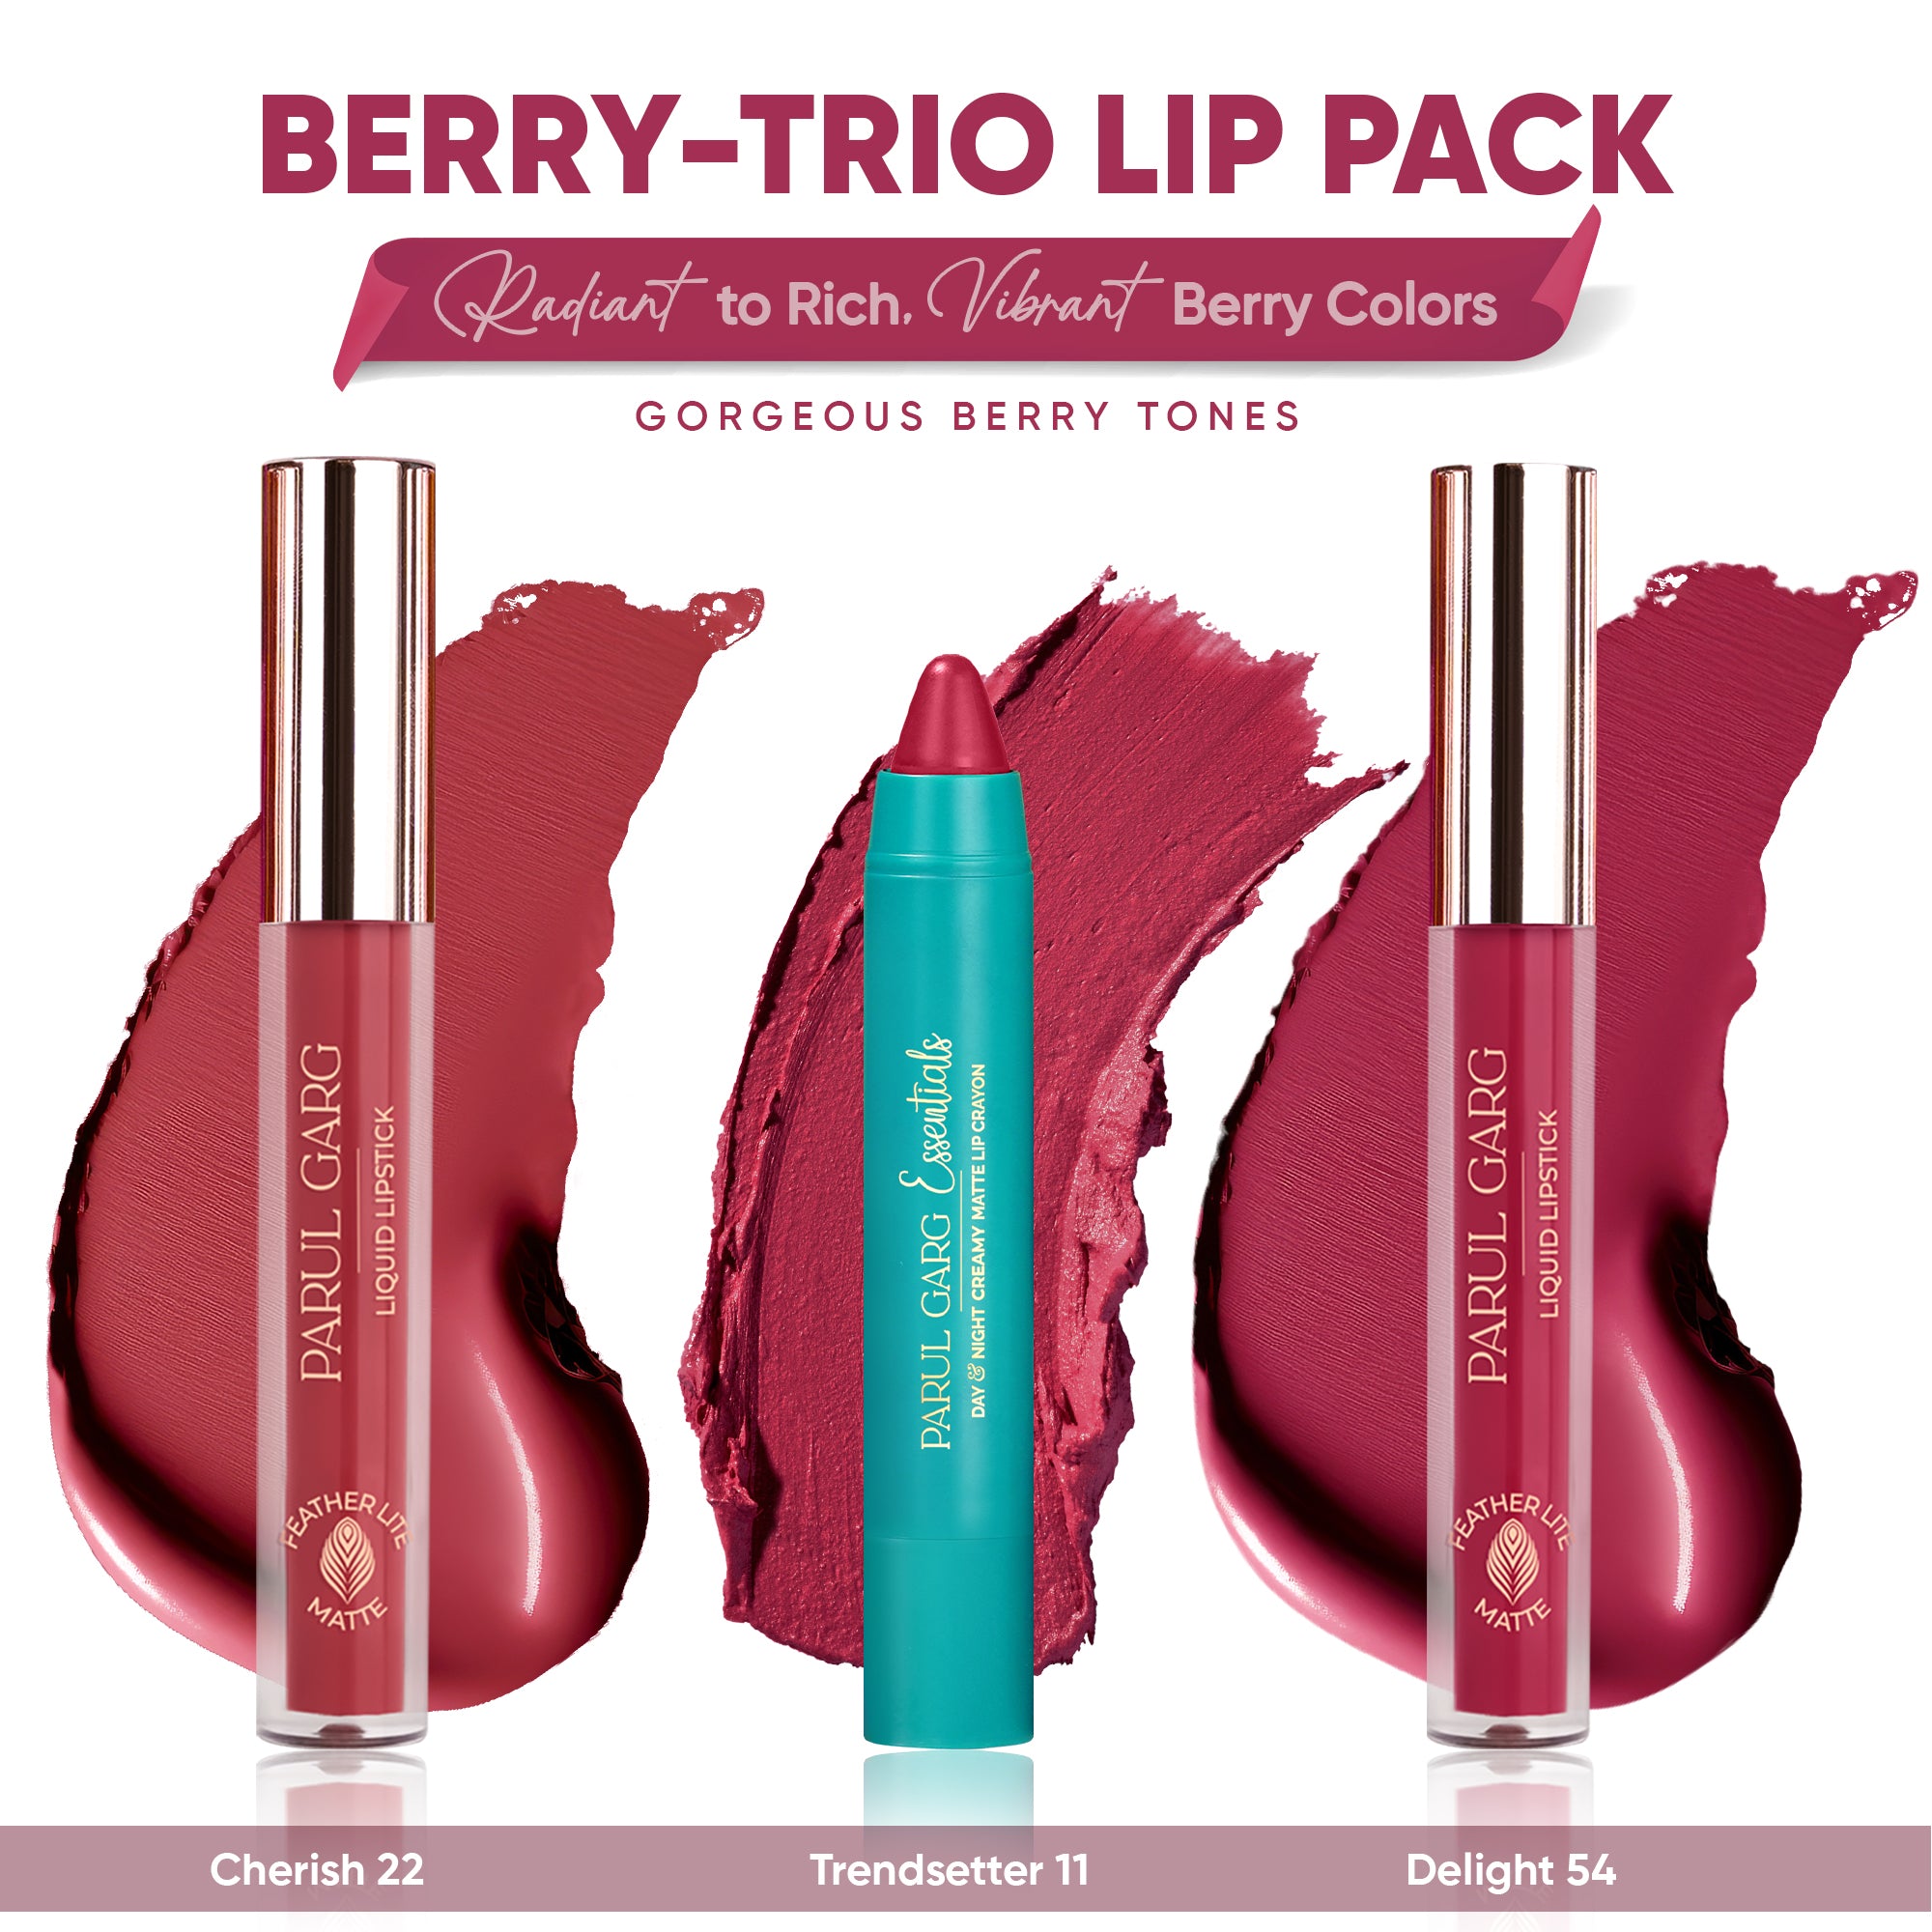 Berry-Trio Lip Pack